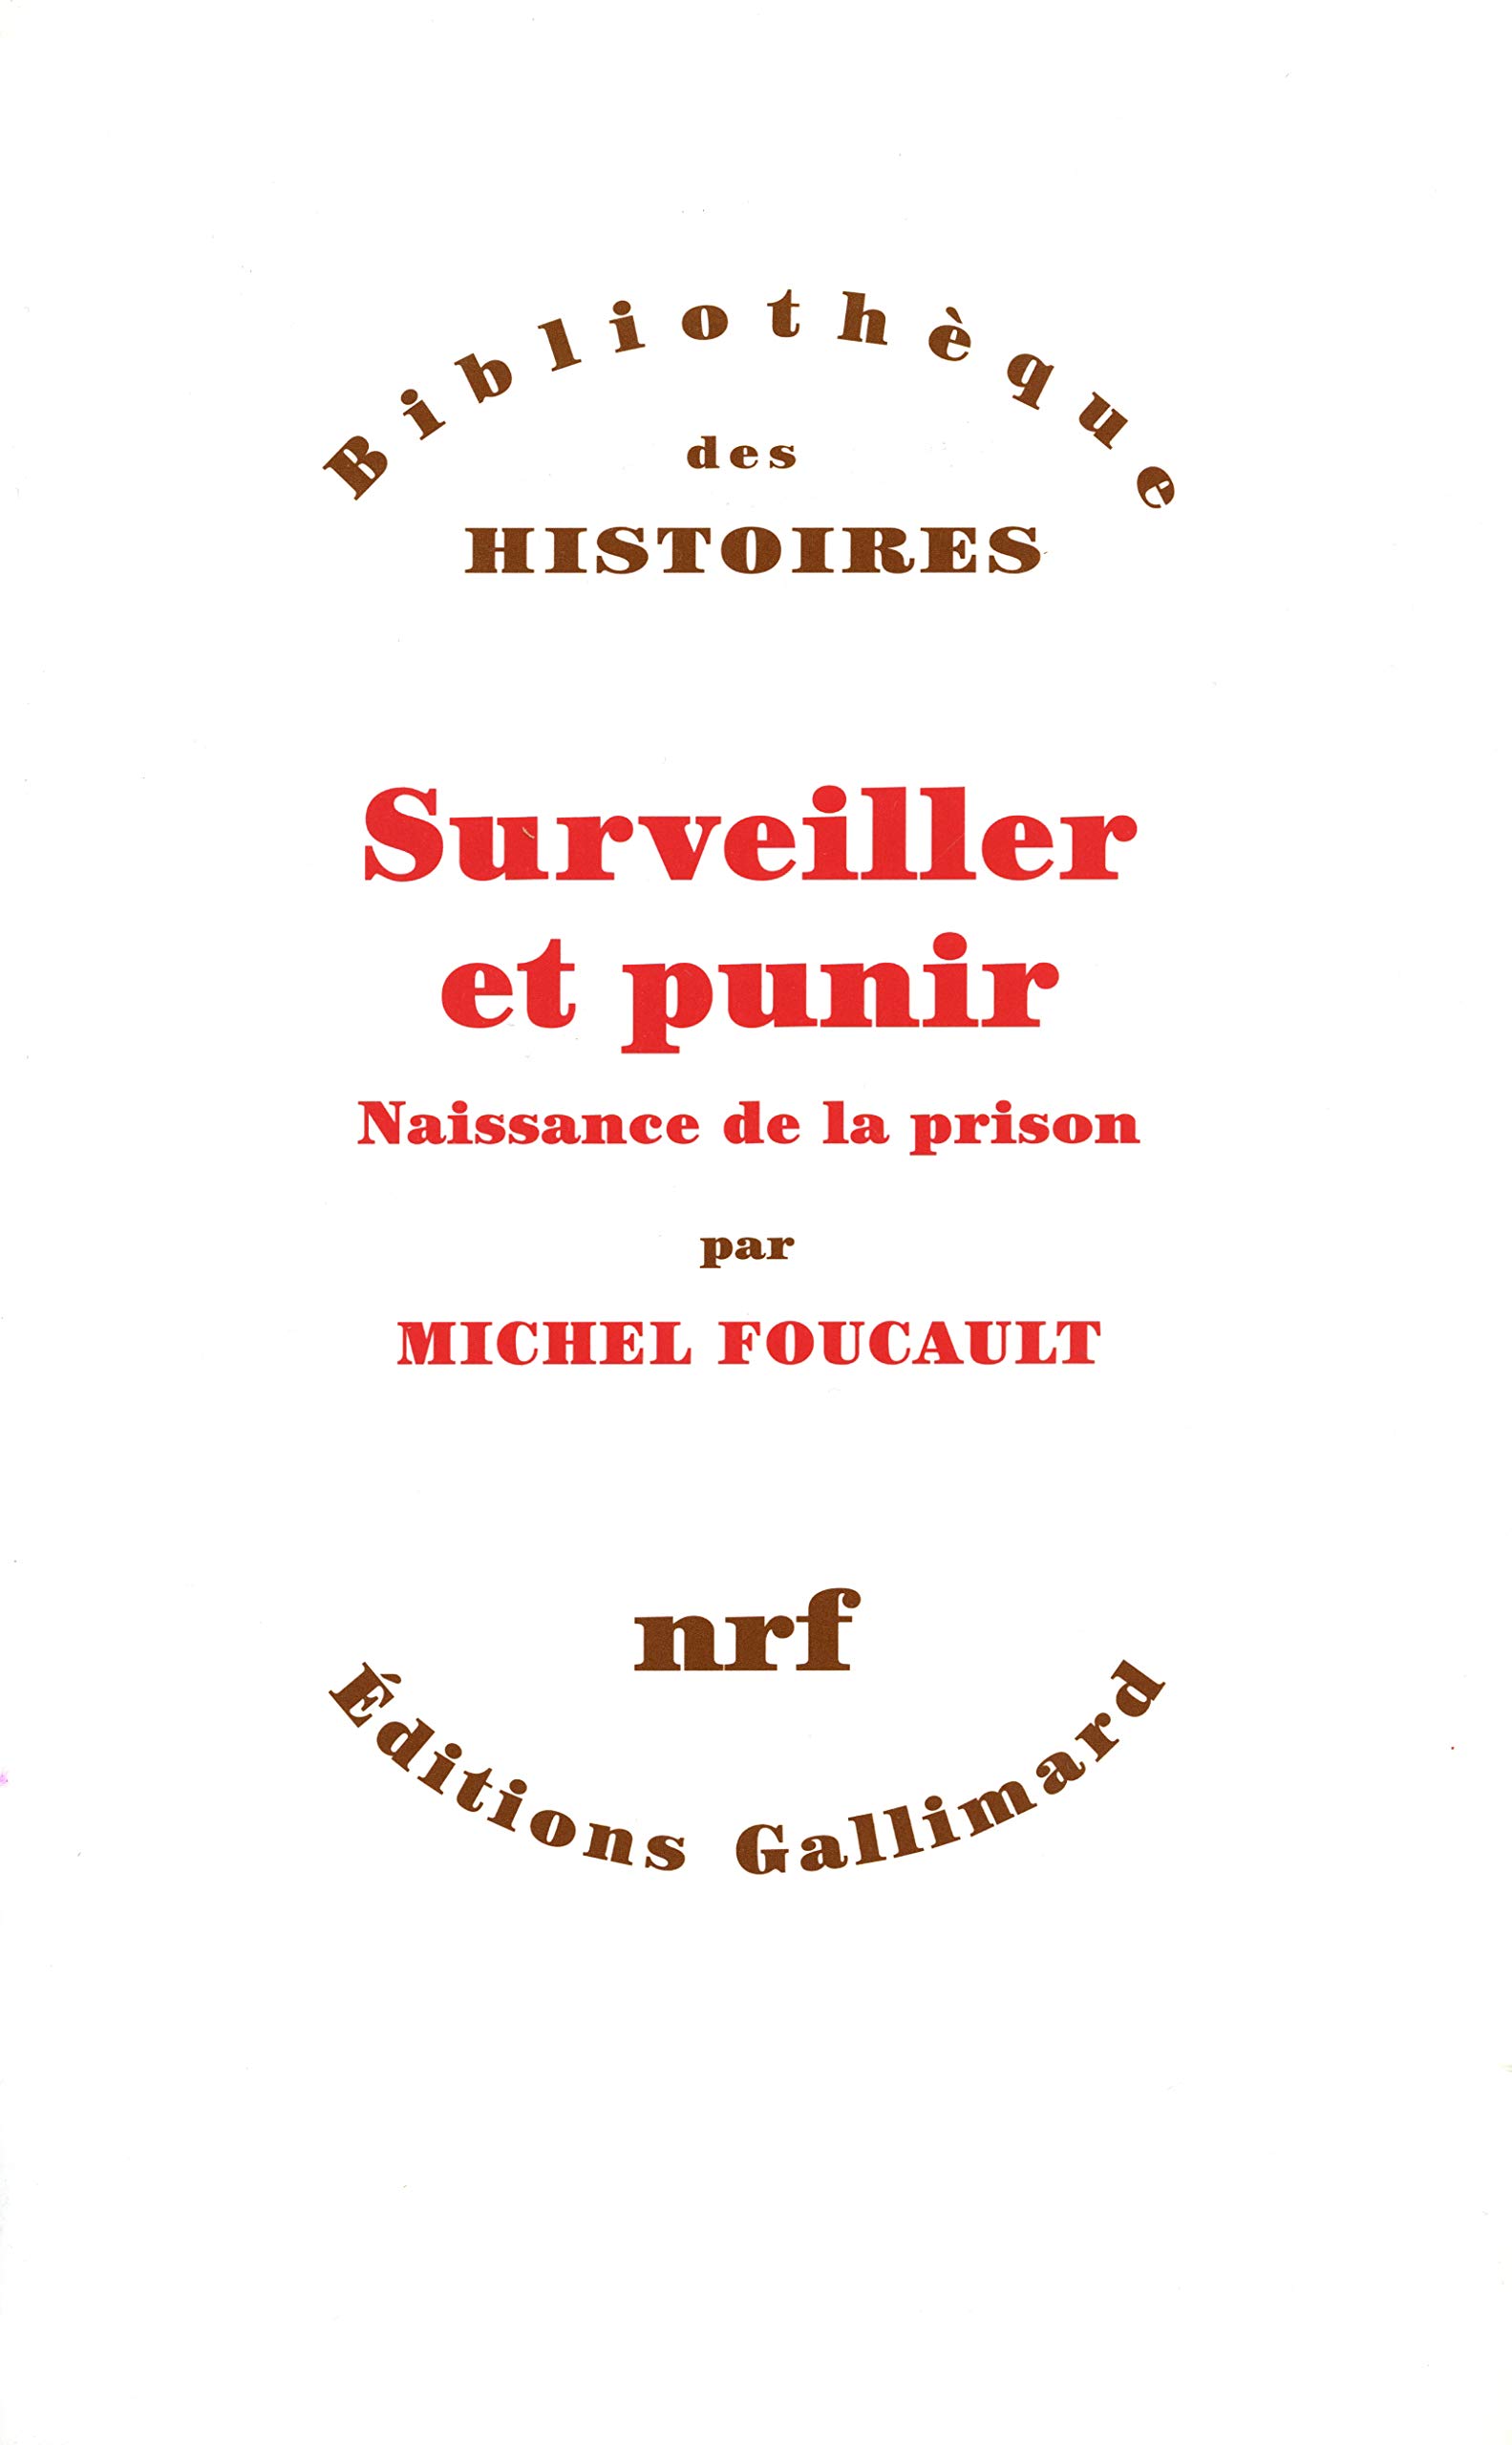 Surveiller et punir: Naissance de la prison | Michel Foucault